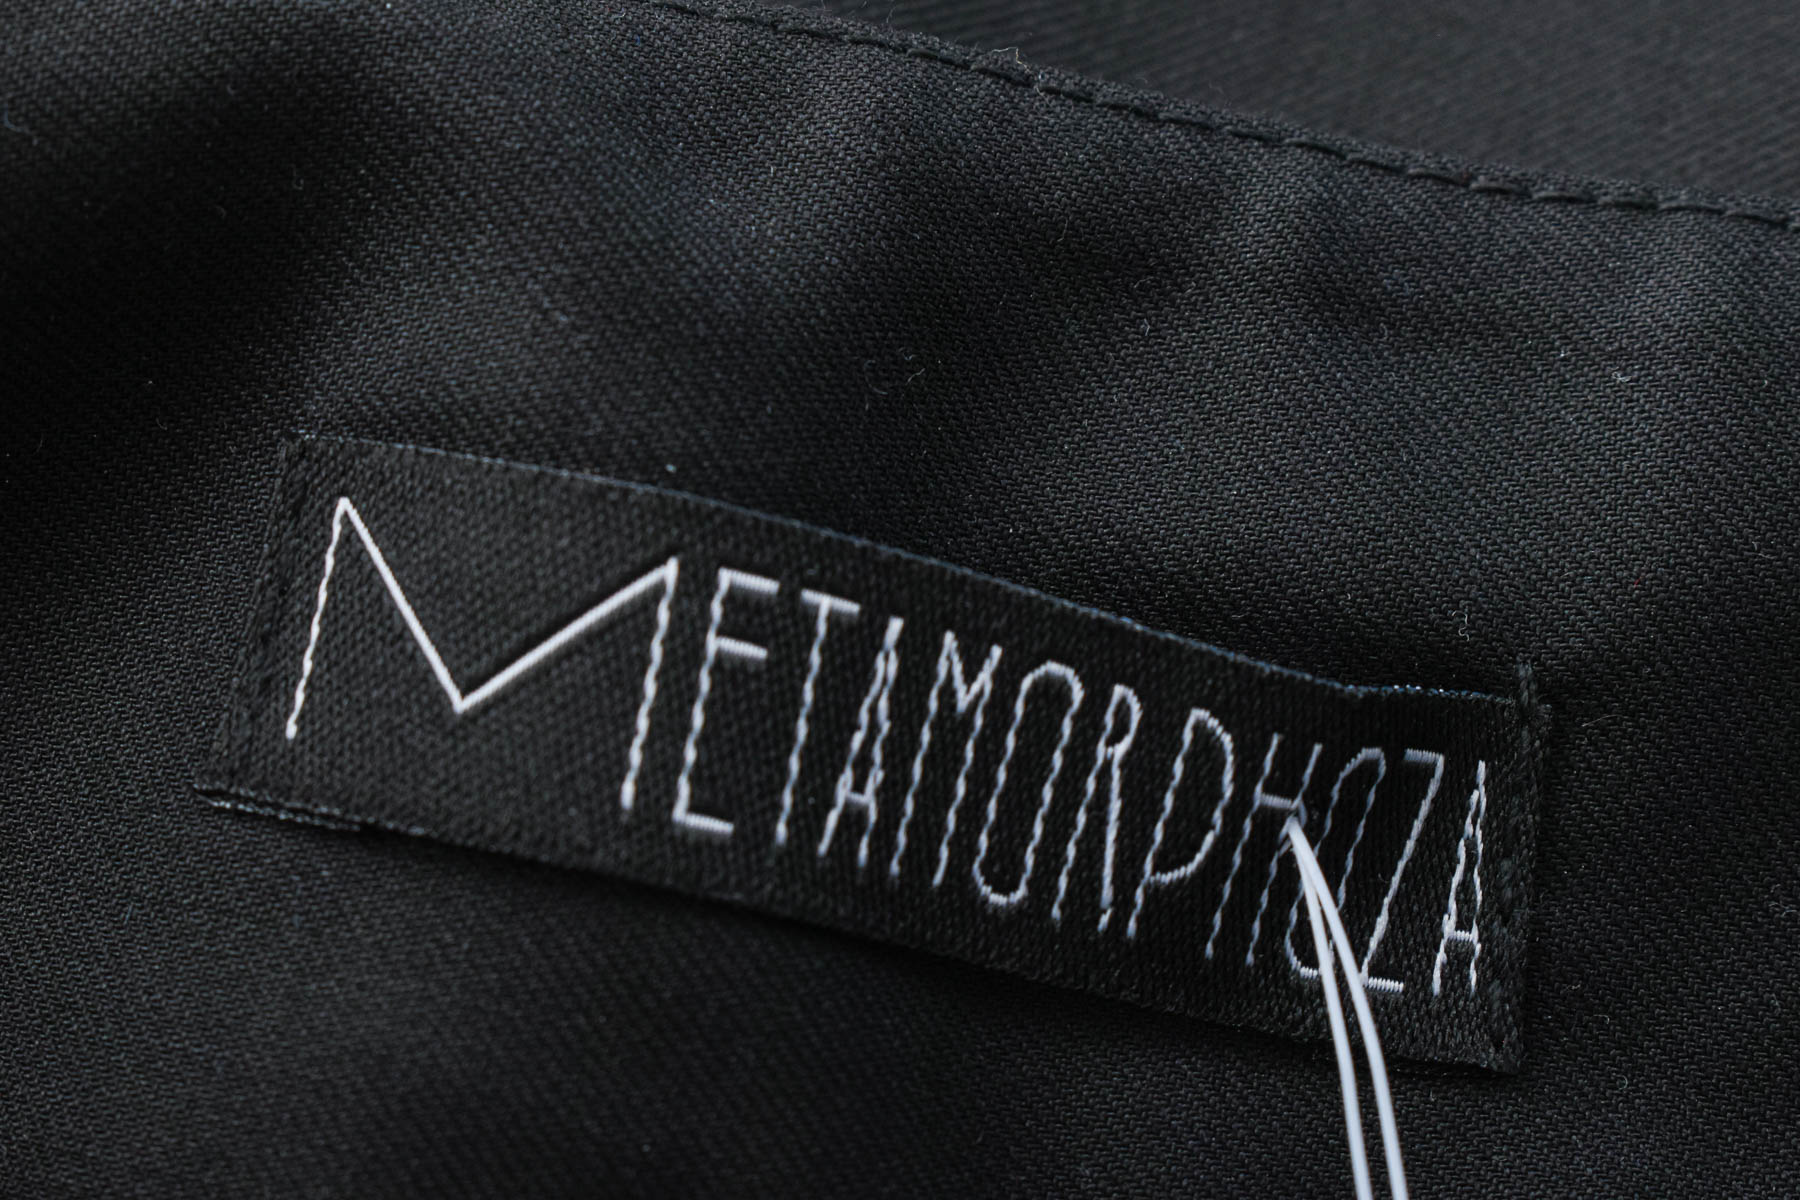 Дамски панталон - METAMORPHOZA - 2